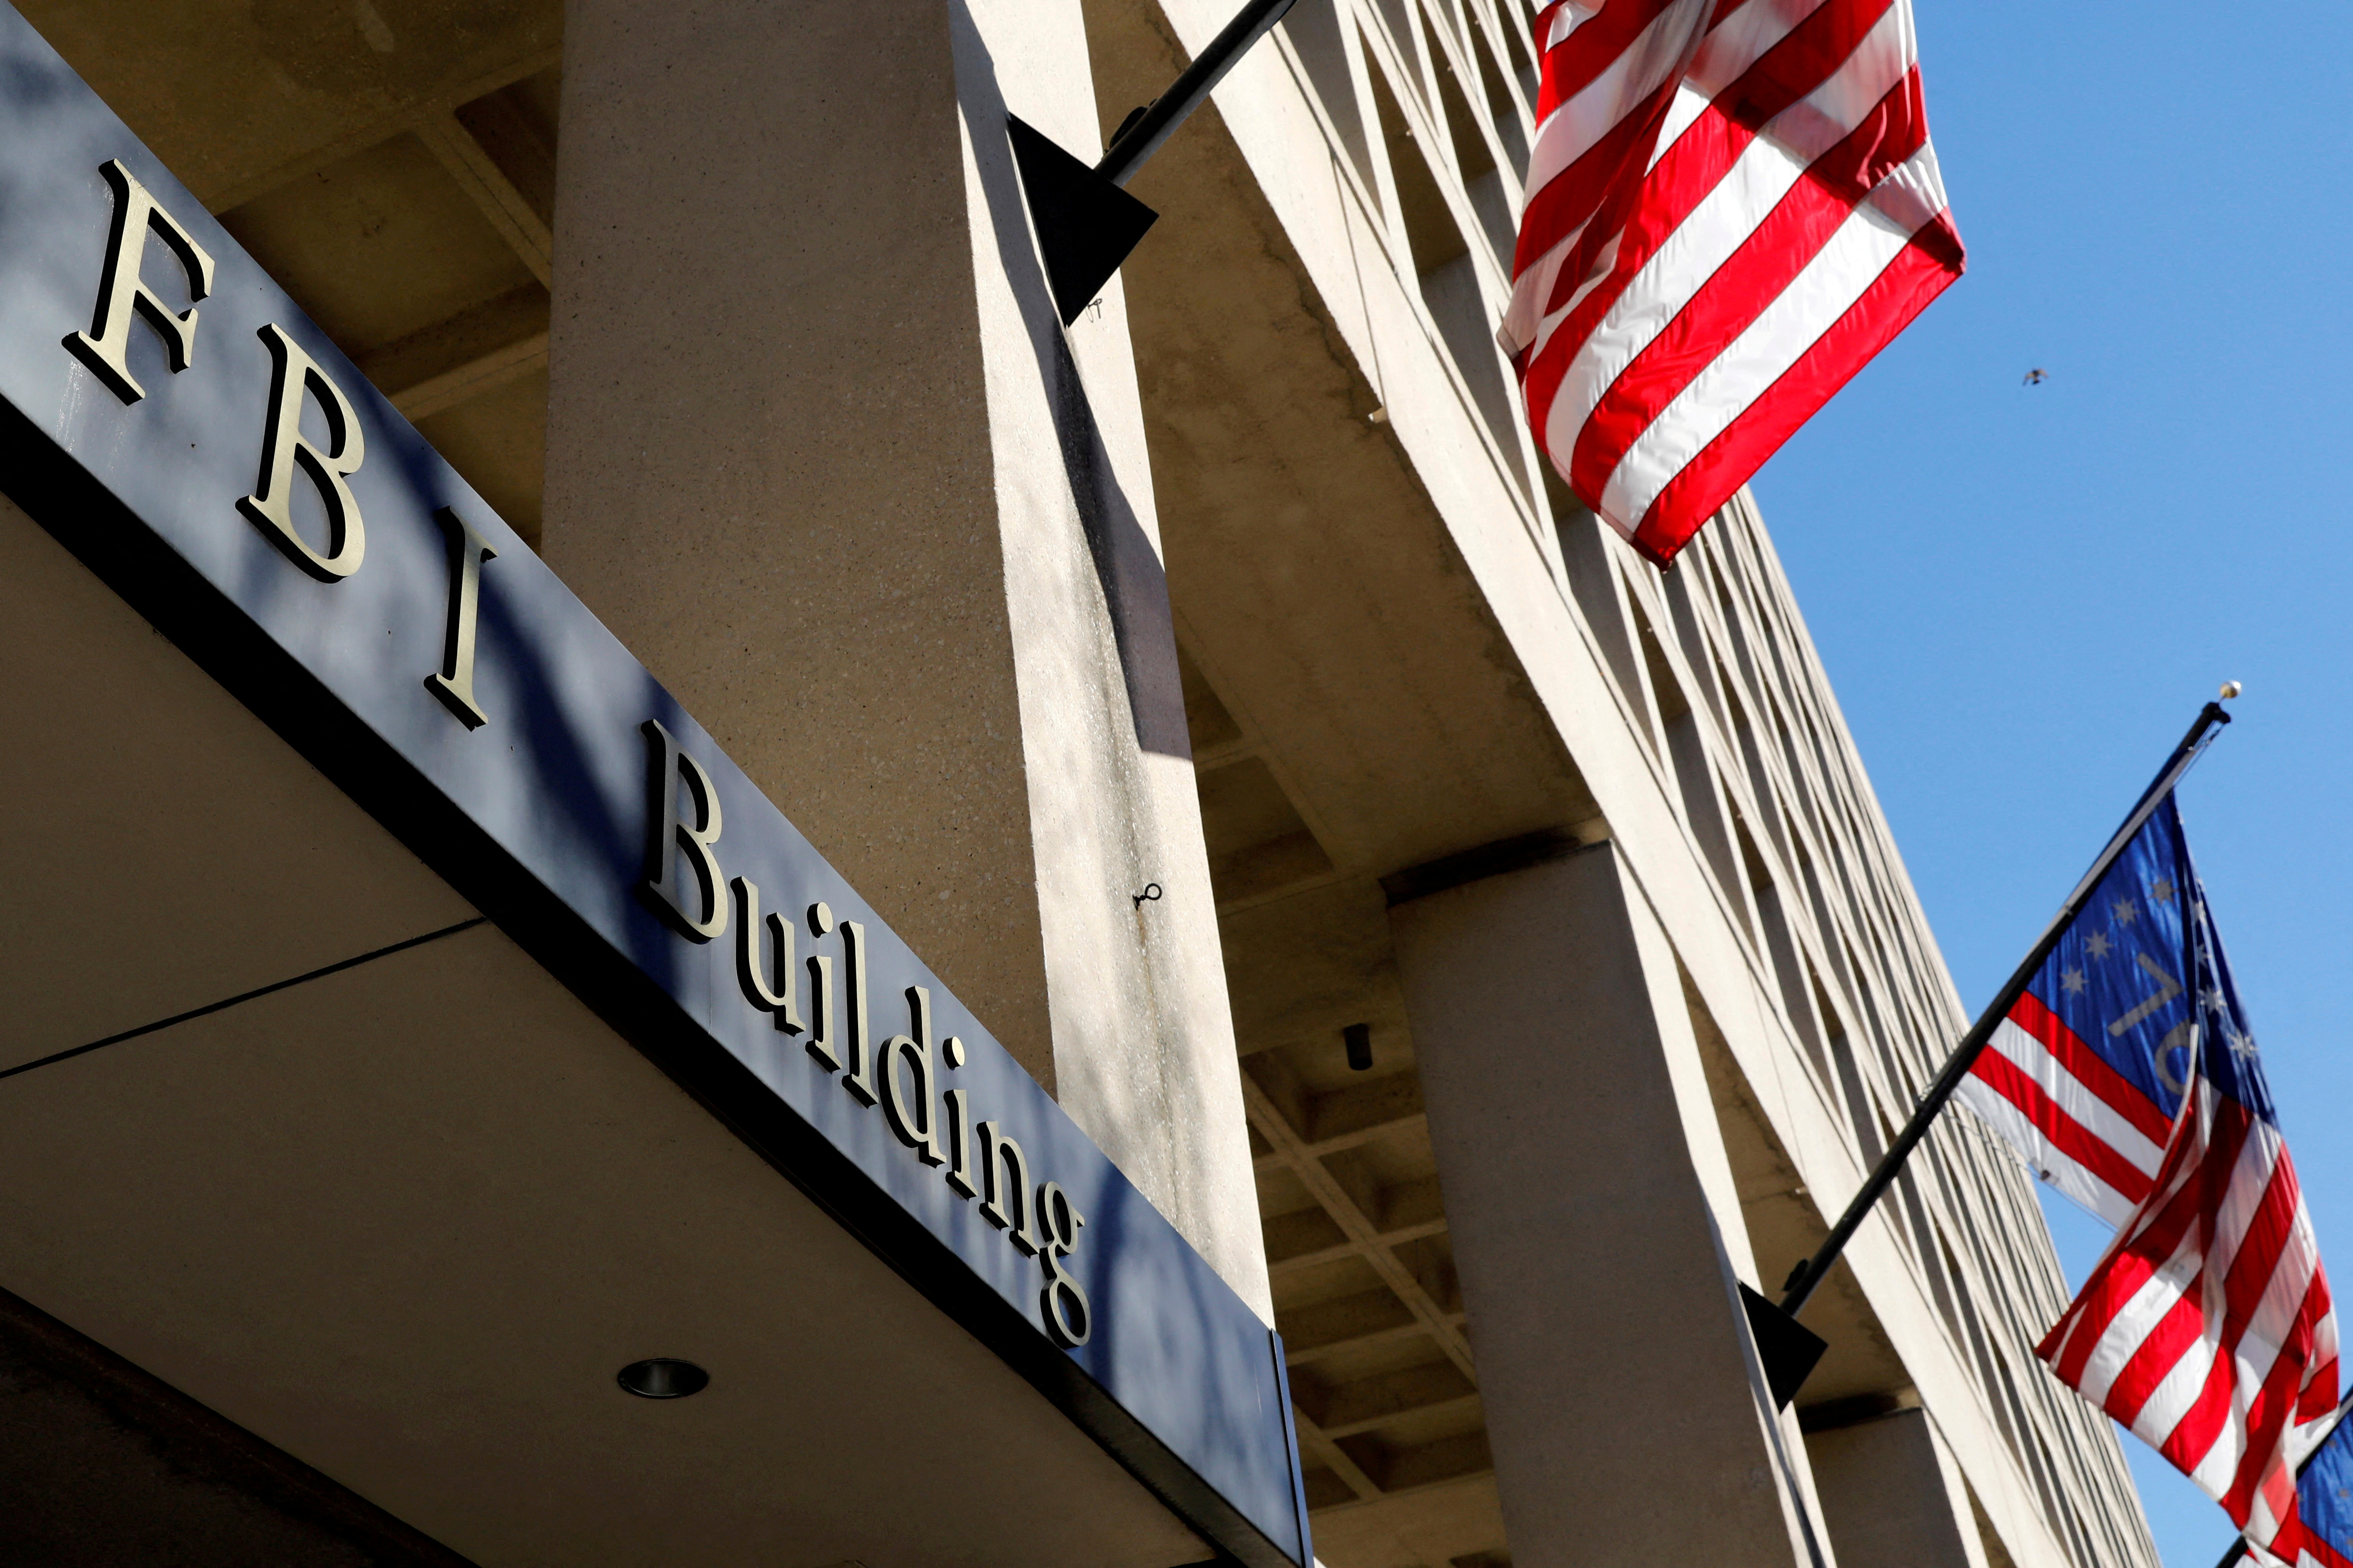 FOTO DE ARCHIVO: El edificio de la sede del FBI se ve en Washington, Estados Unidos, el 7 de diciembre de 2018. REUTERS/Yuri Gripas